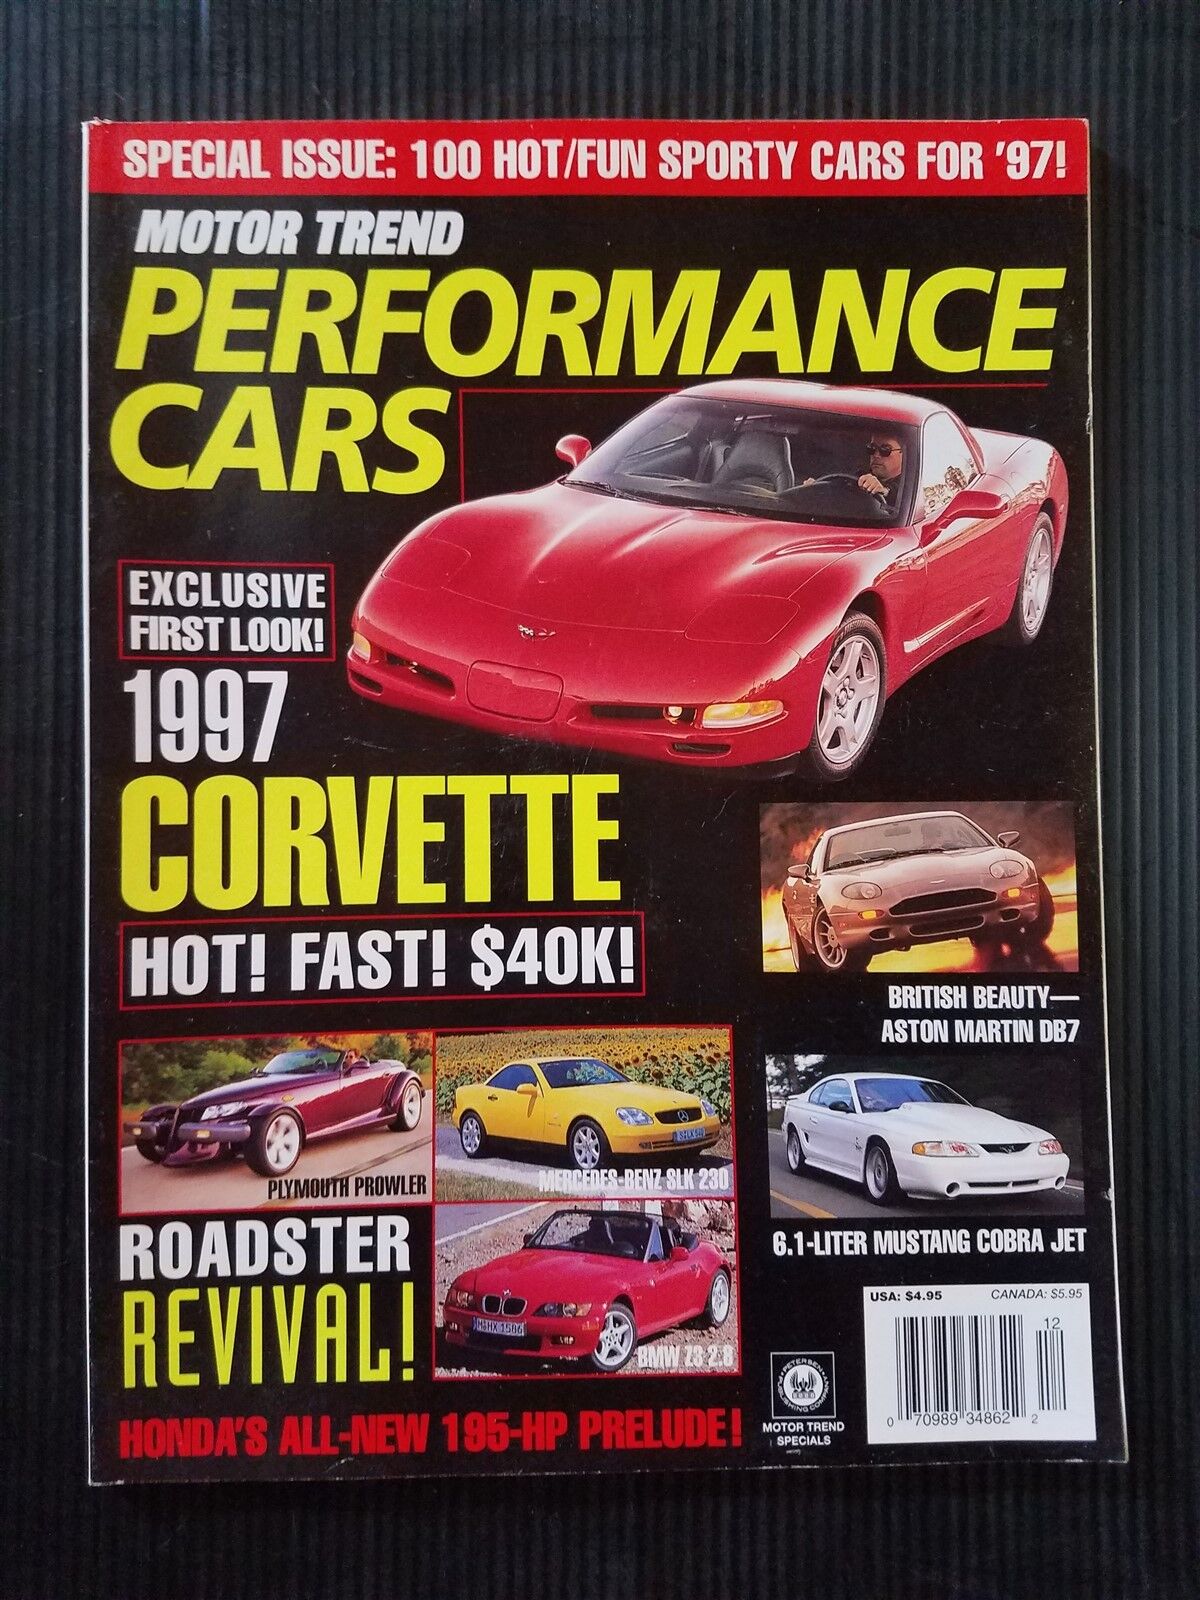 Motor Trend Magazine 1997 Performance Cars - Corvette - Mustang Cobra - Prowler